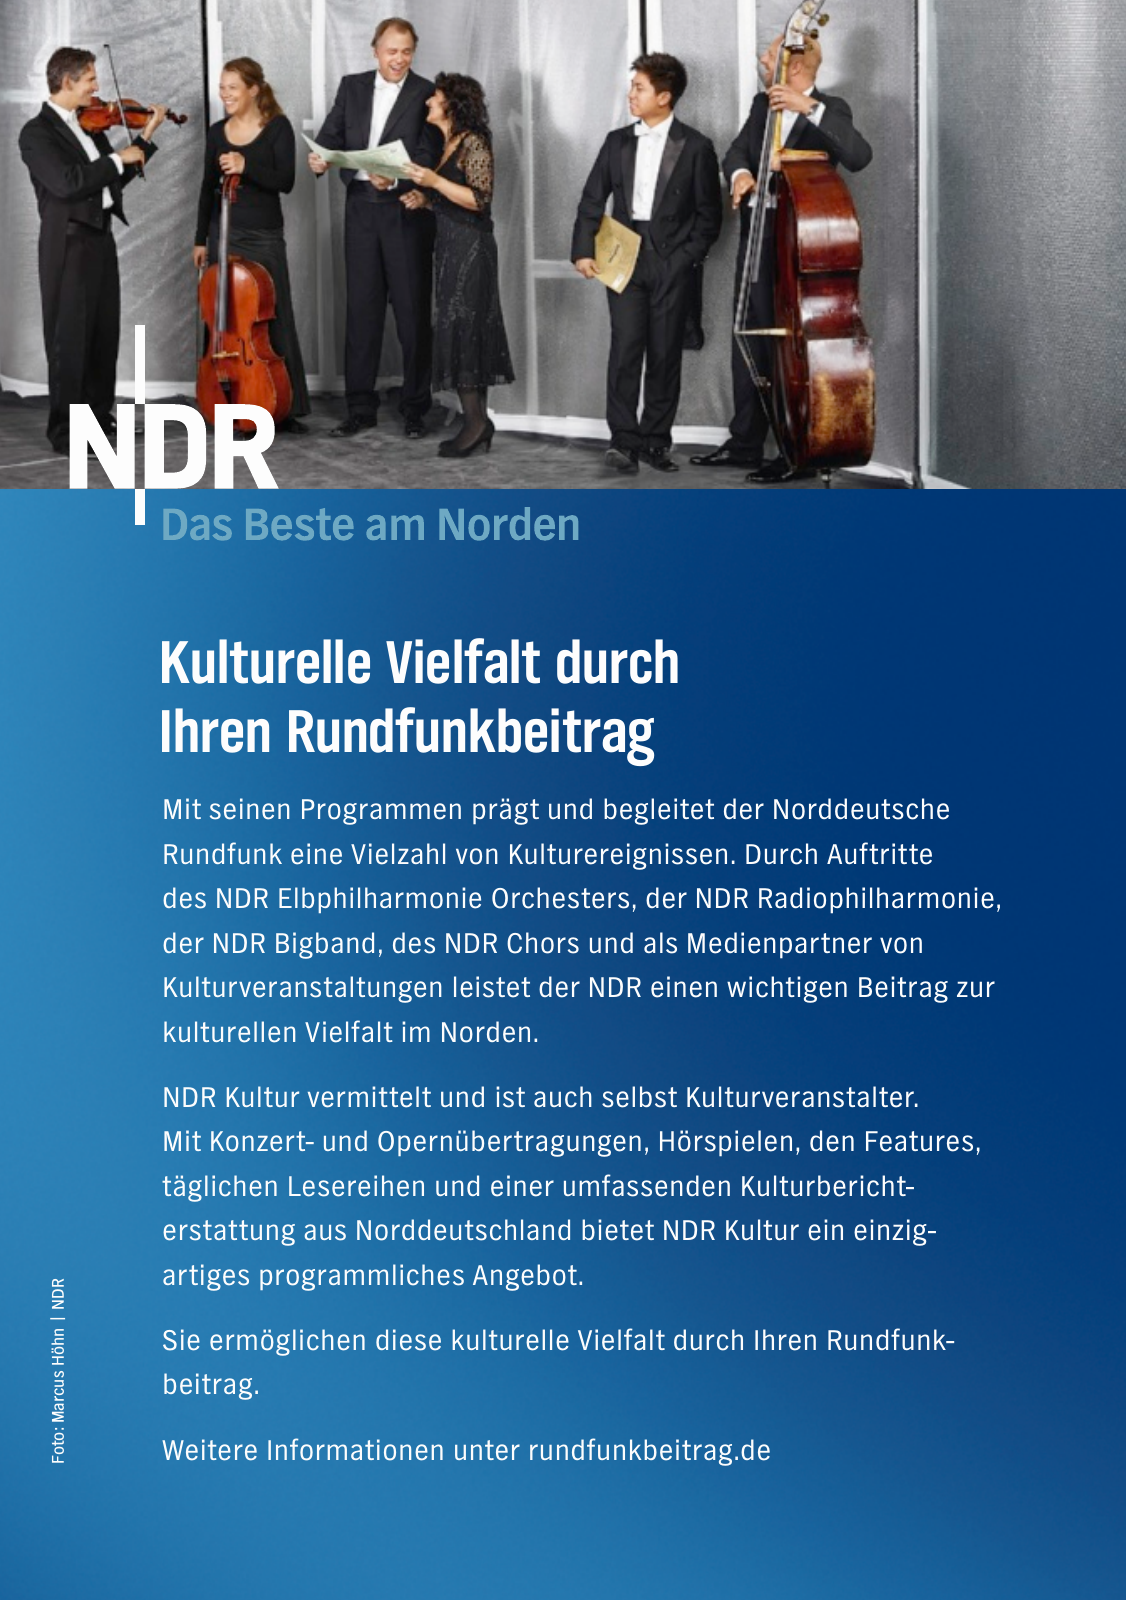 Vorschau NDR Kultur Buch 2017 Seite 2